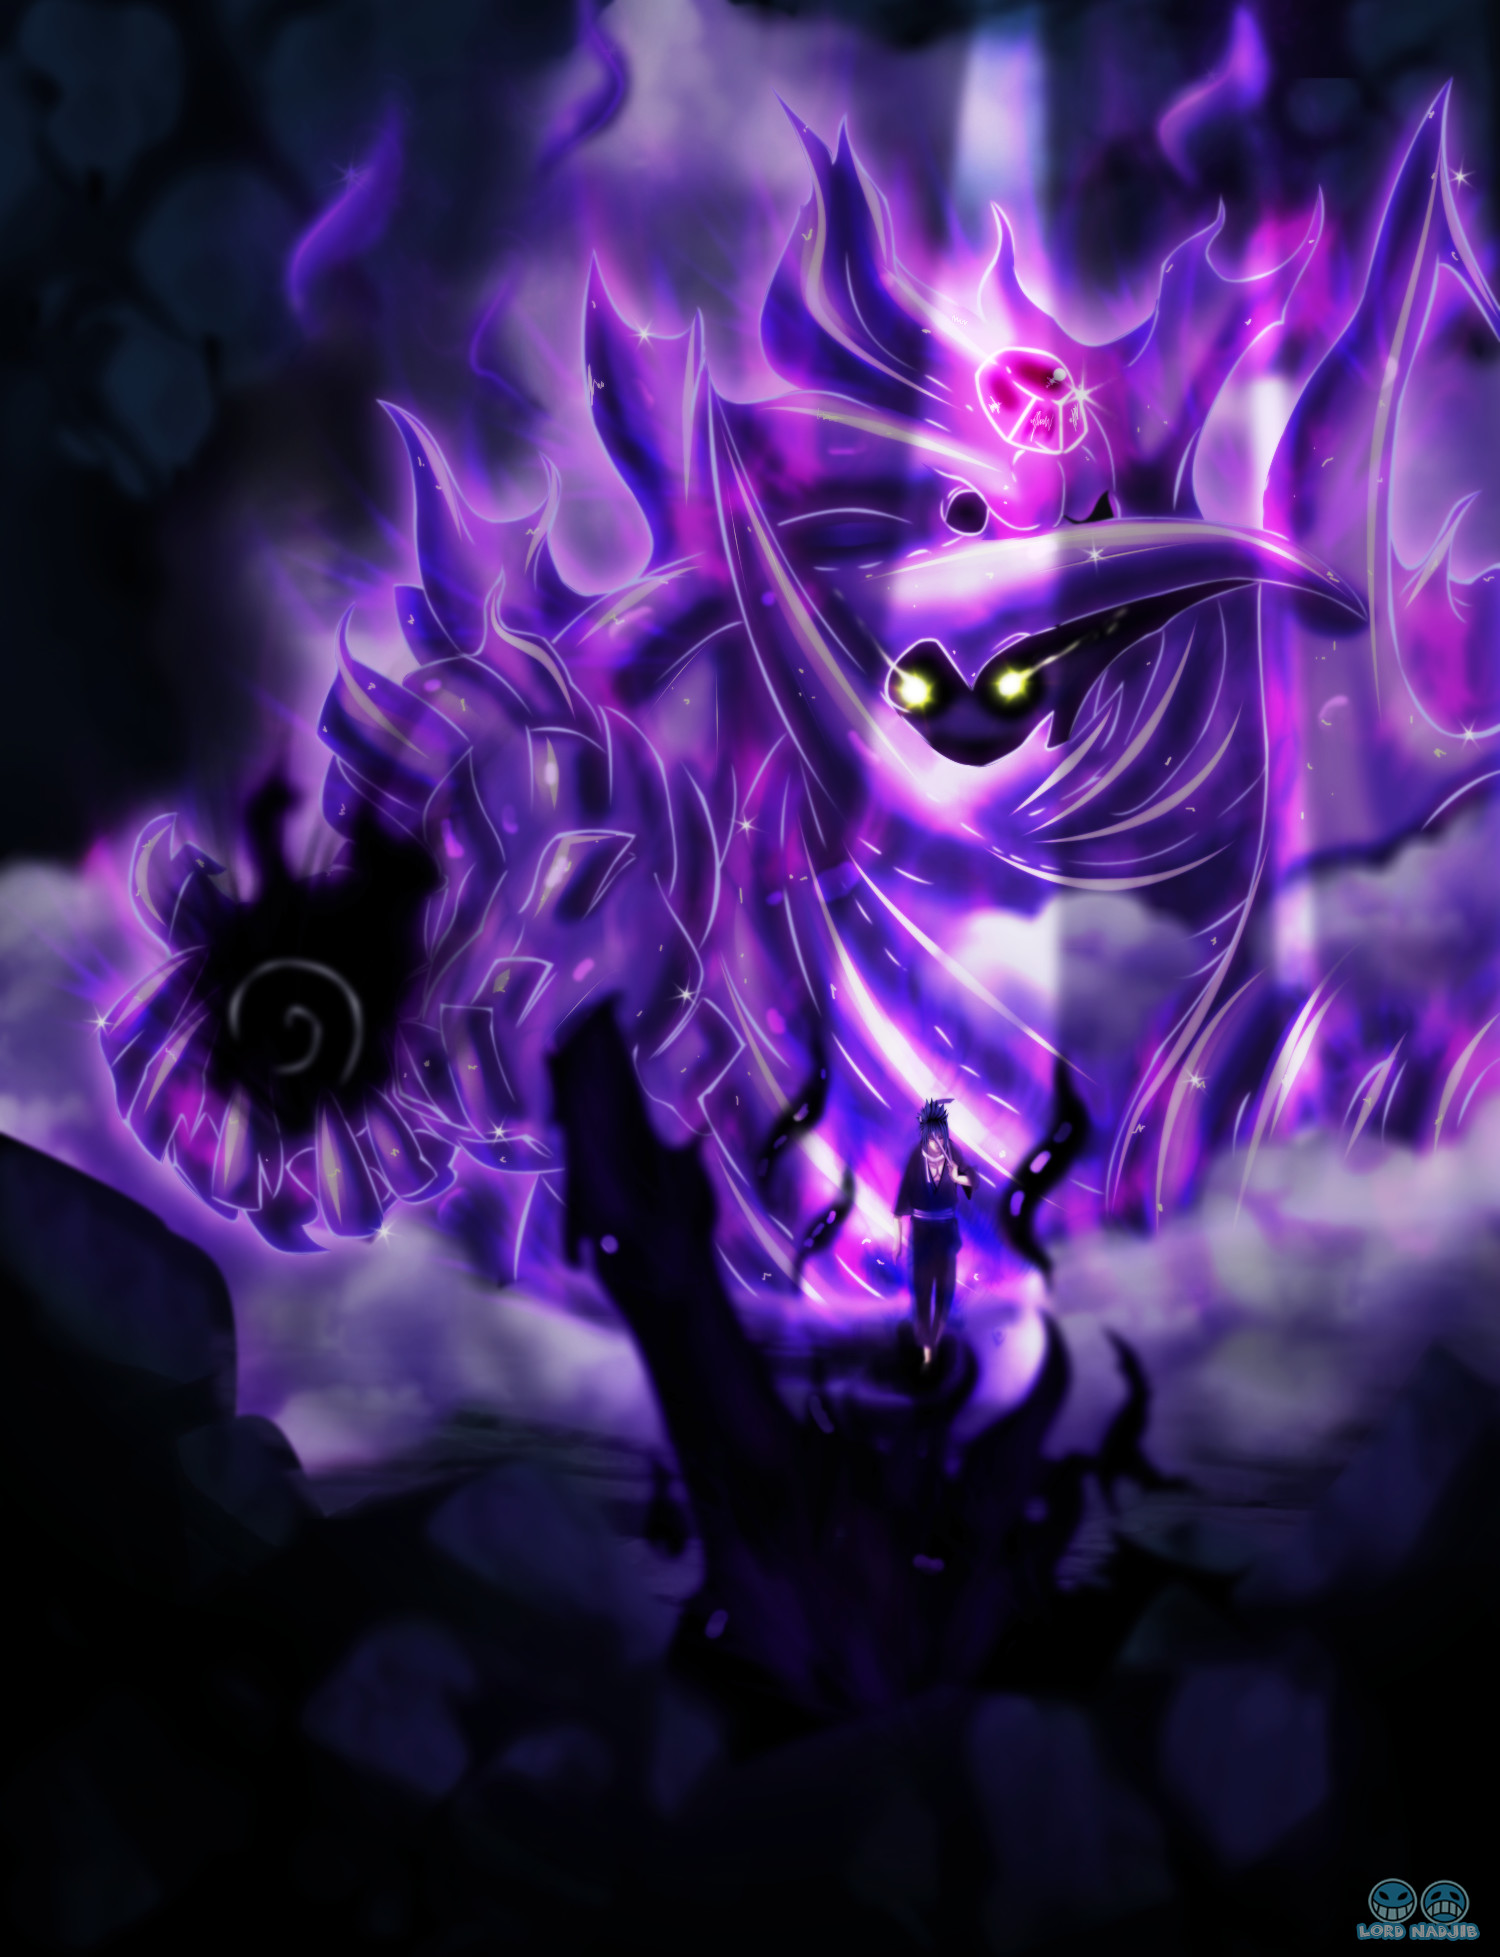 sasuke susanoo fondo de pantalla hd,púrpura,violeta,cg artwork,personaje de ficción,diseño gráfico